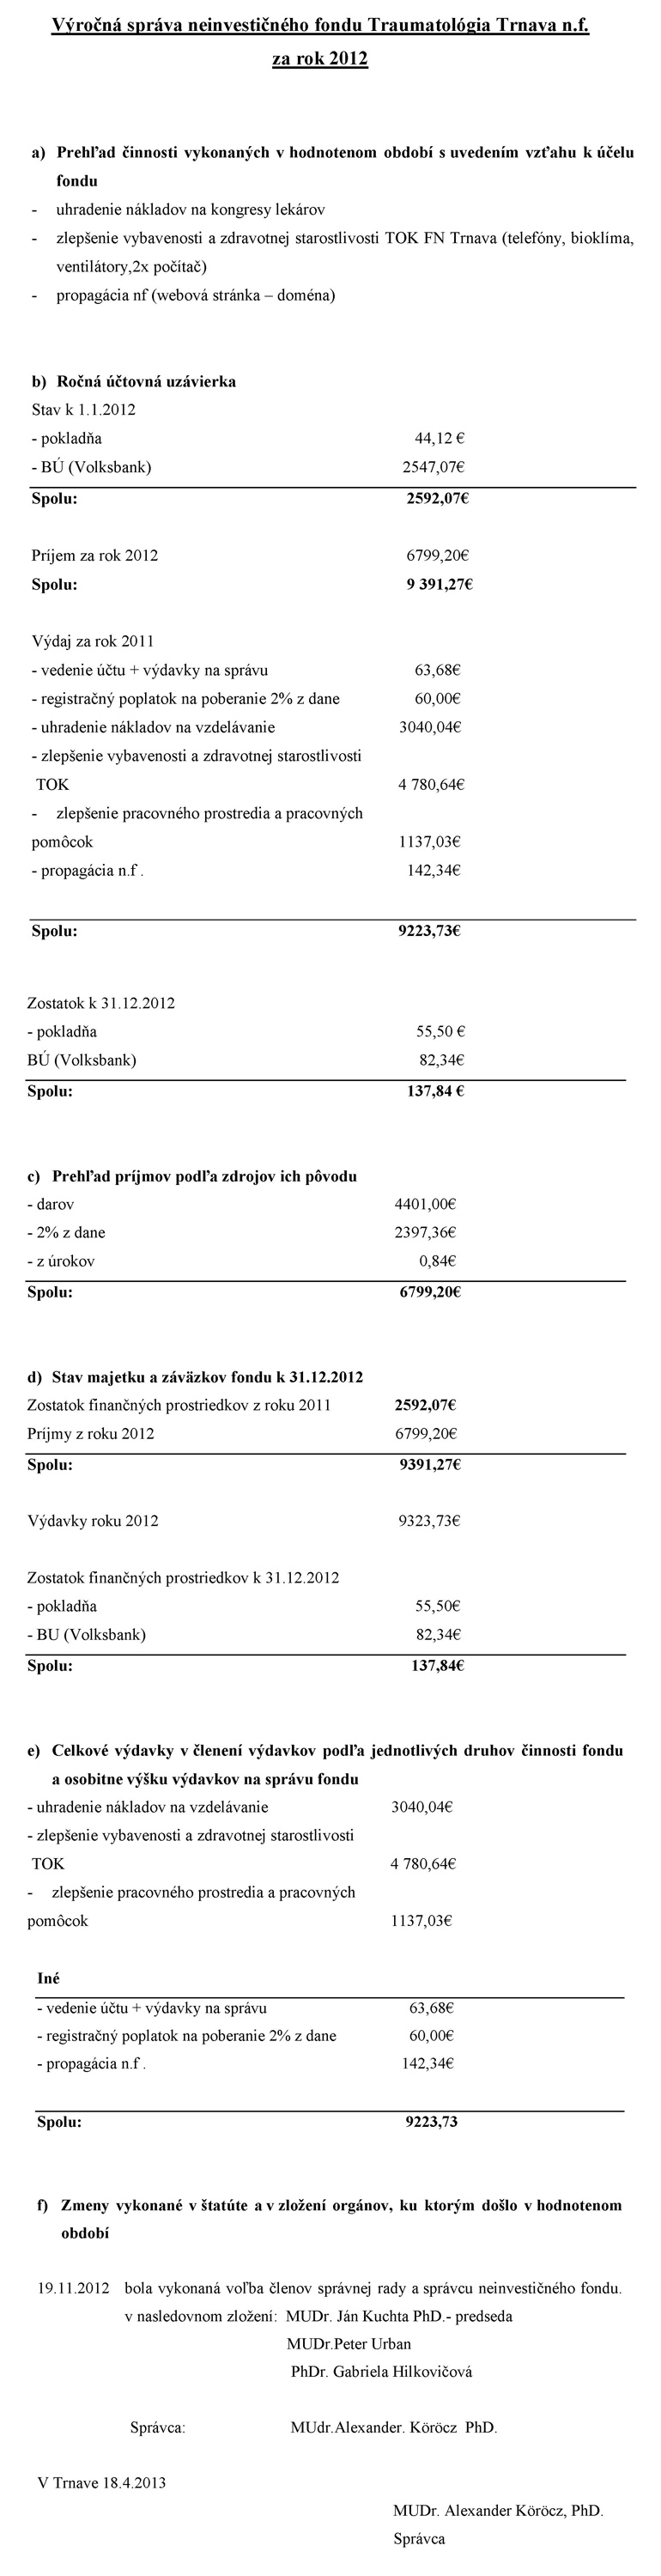 Výročná správa neinvestičného fondu Traumatológia Trnava, n.f. za rok 2012